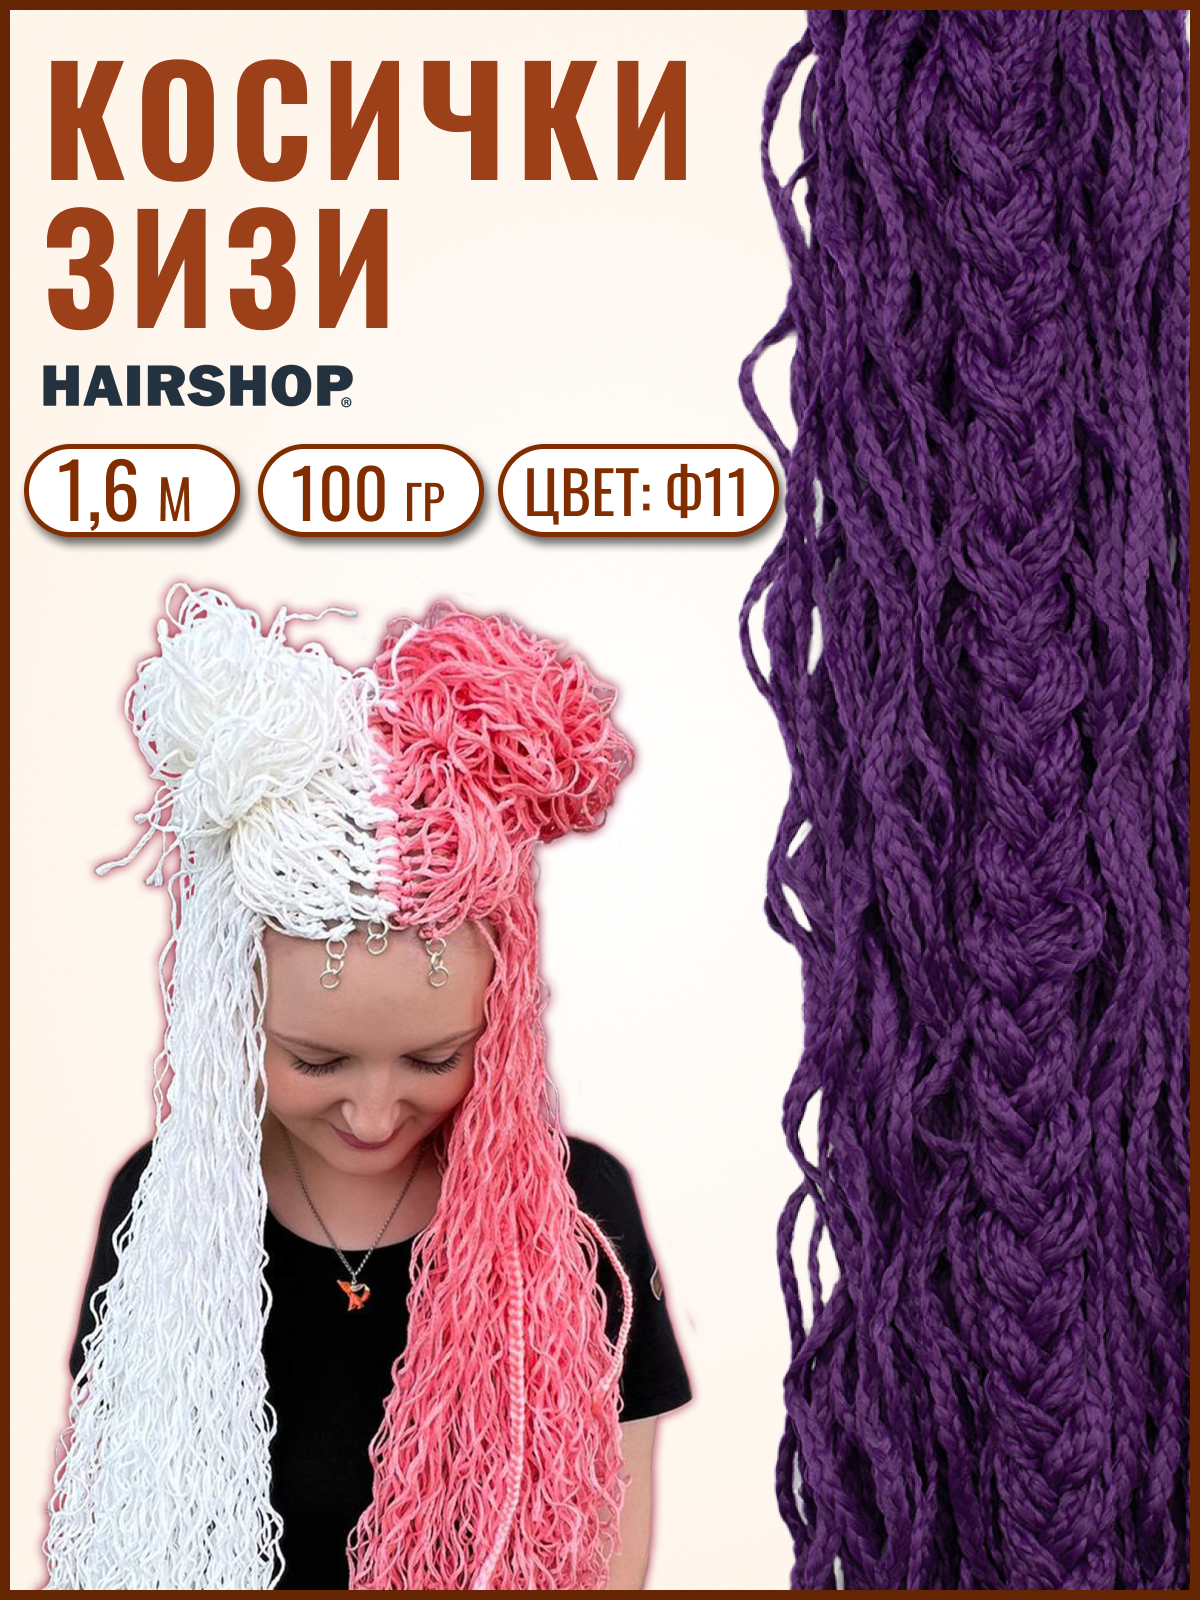 Косички Hairshop Зизи волна Ф11 Фиолетовый косички hairshop зизи гофр ф11 фиолетовый